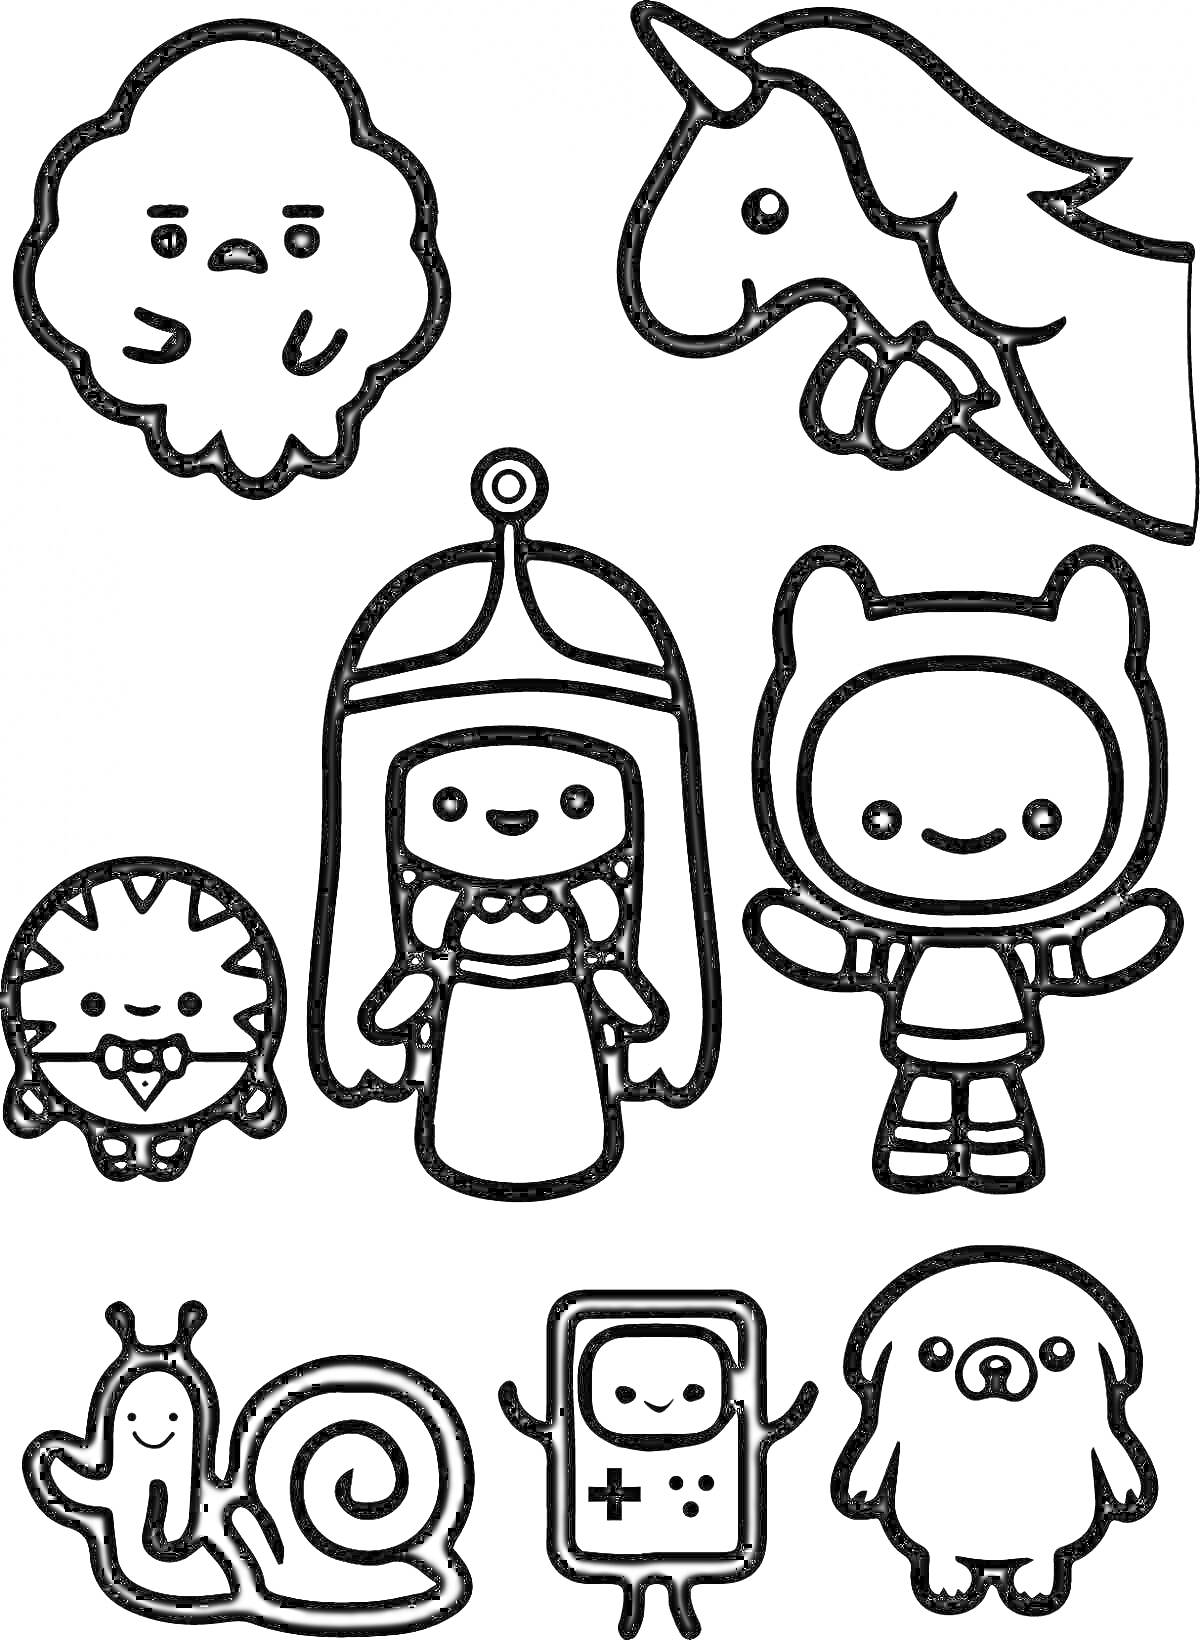 Раскраска лица на облаке, голова единорога, ёжик с сумкой, принцесса, человек в костюме кота, улитка, игровой контроллер, человекоподобная собака